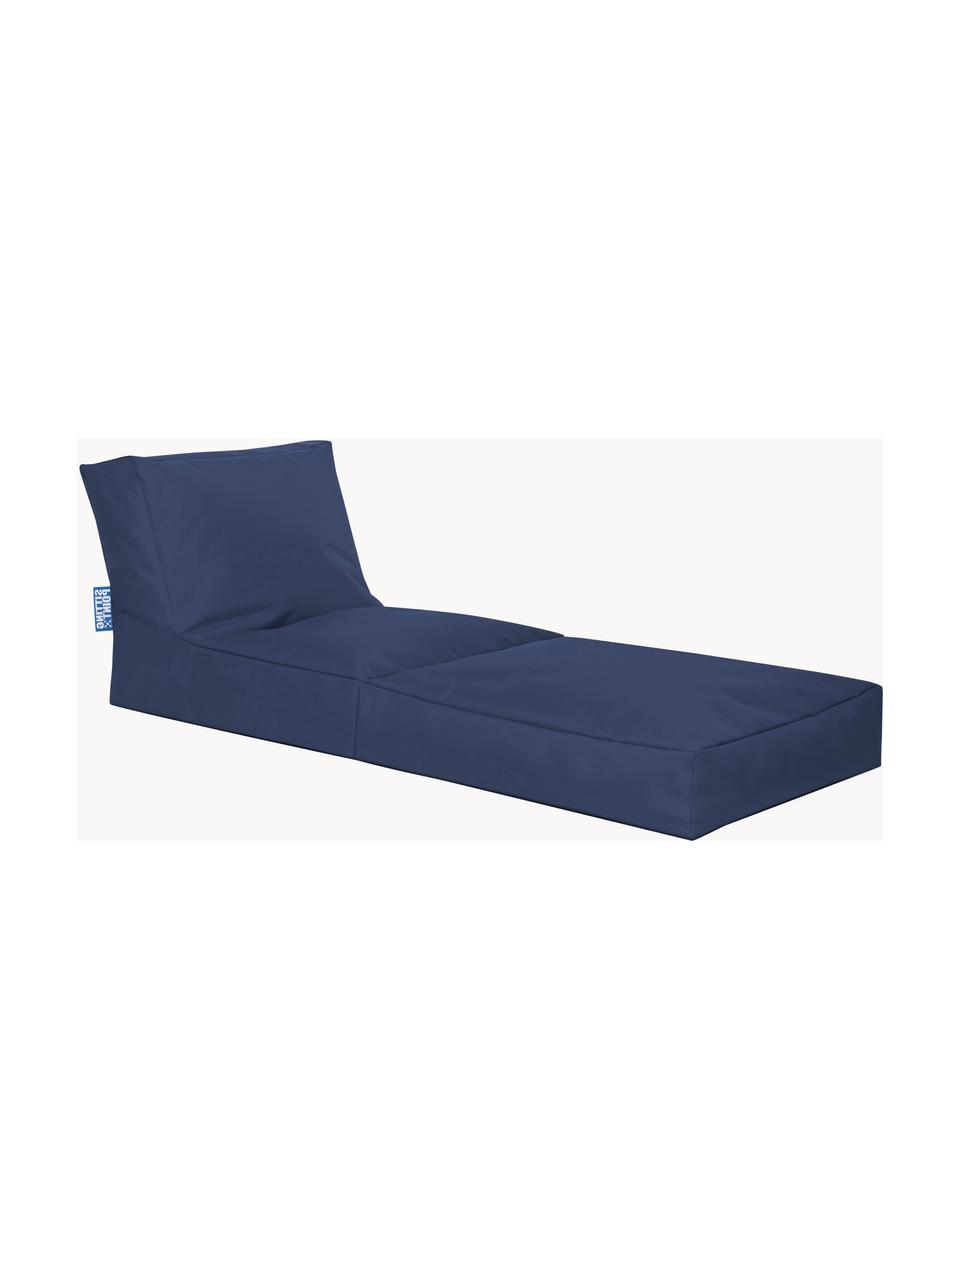 Outdoor loungefauteuil Pop Up met ligfunctie, Geweven stof donkerblauw, B 70 x D 90 cm